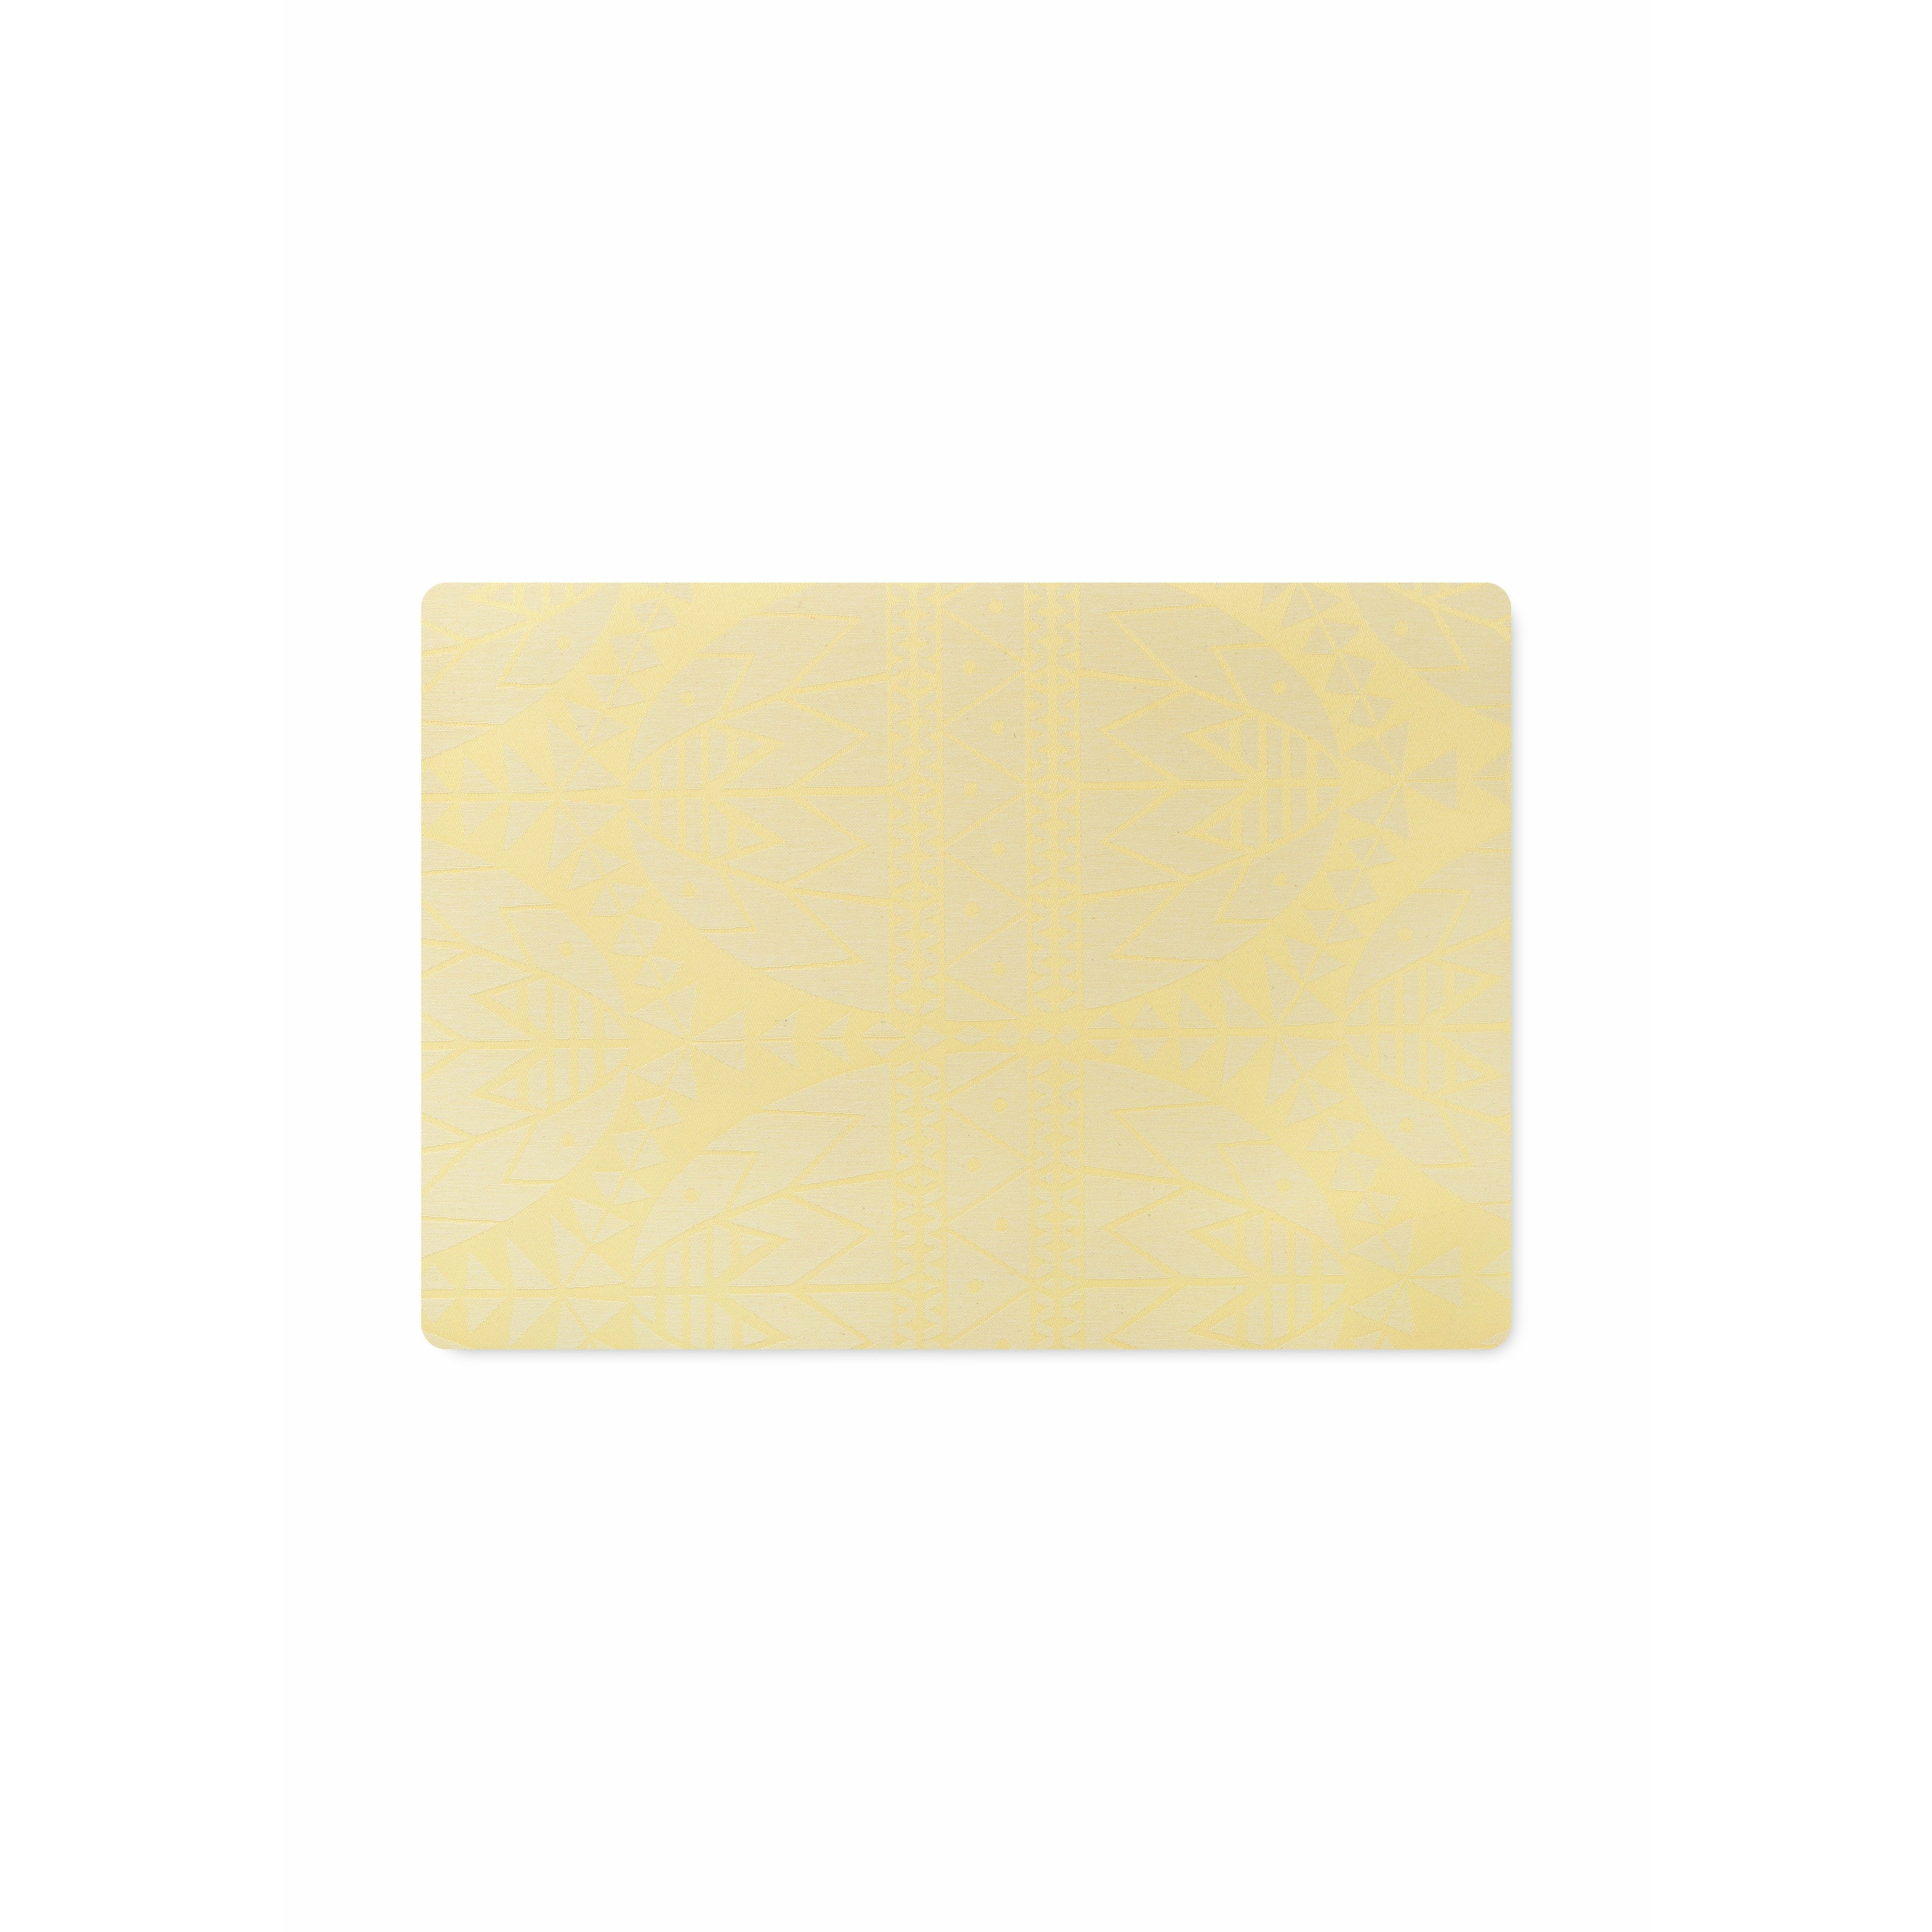 Juna påsk placemat 43x30 cm, gul